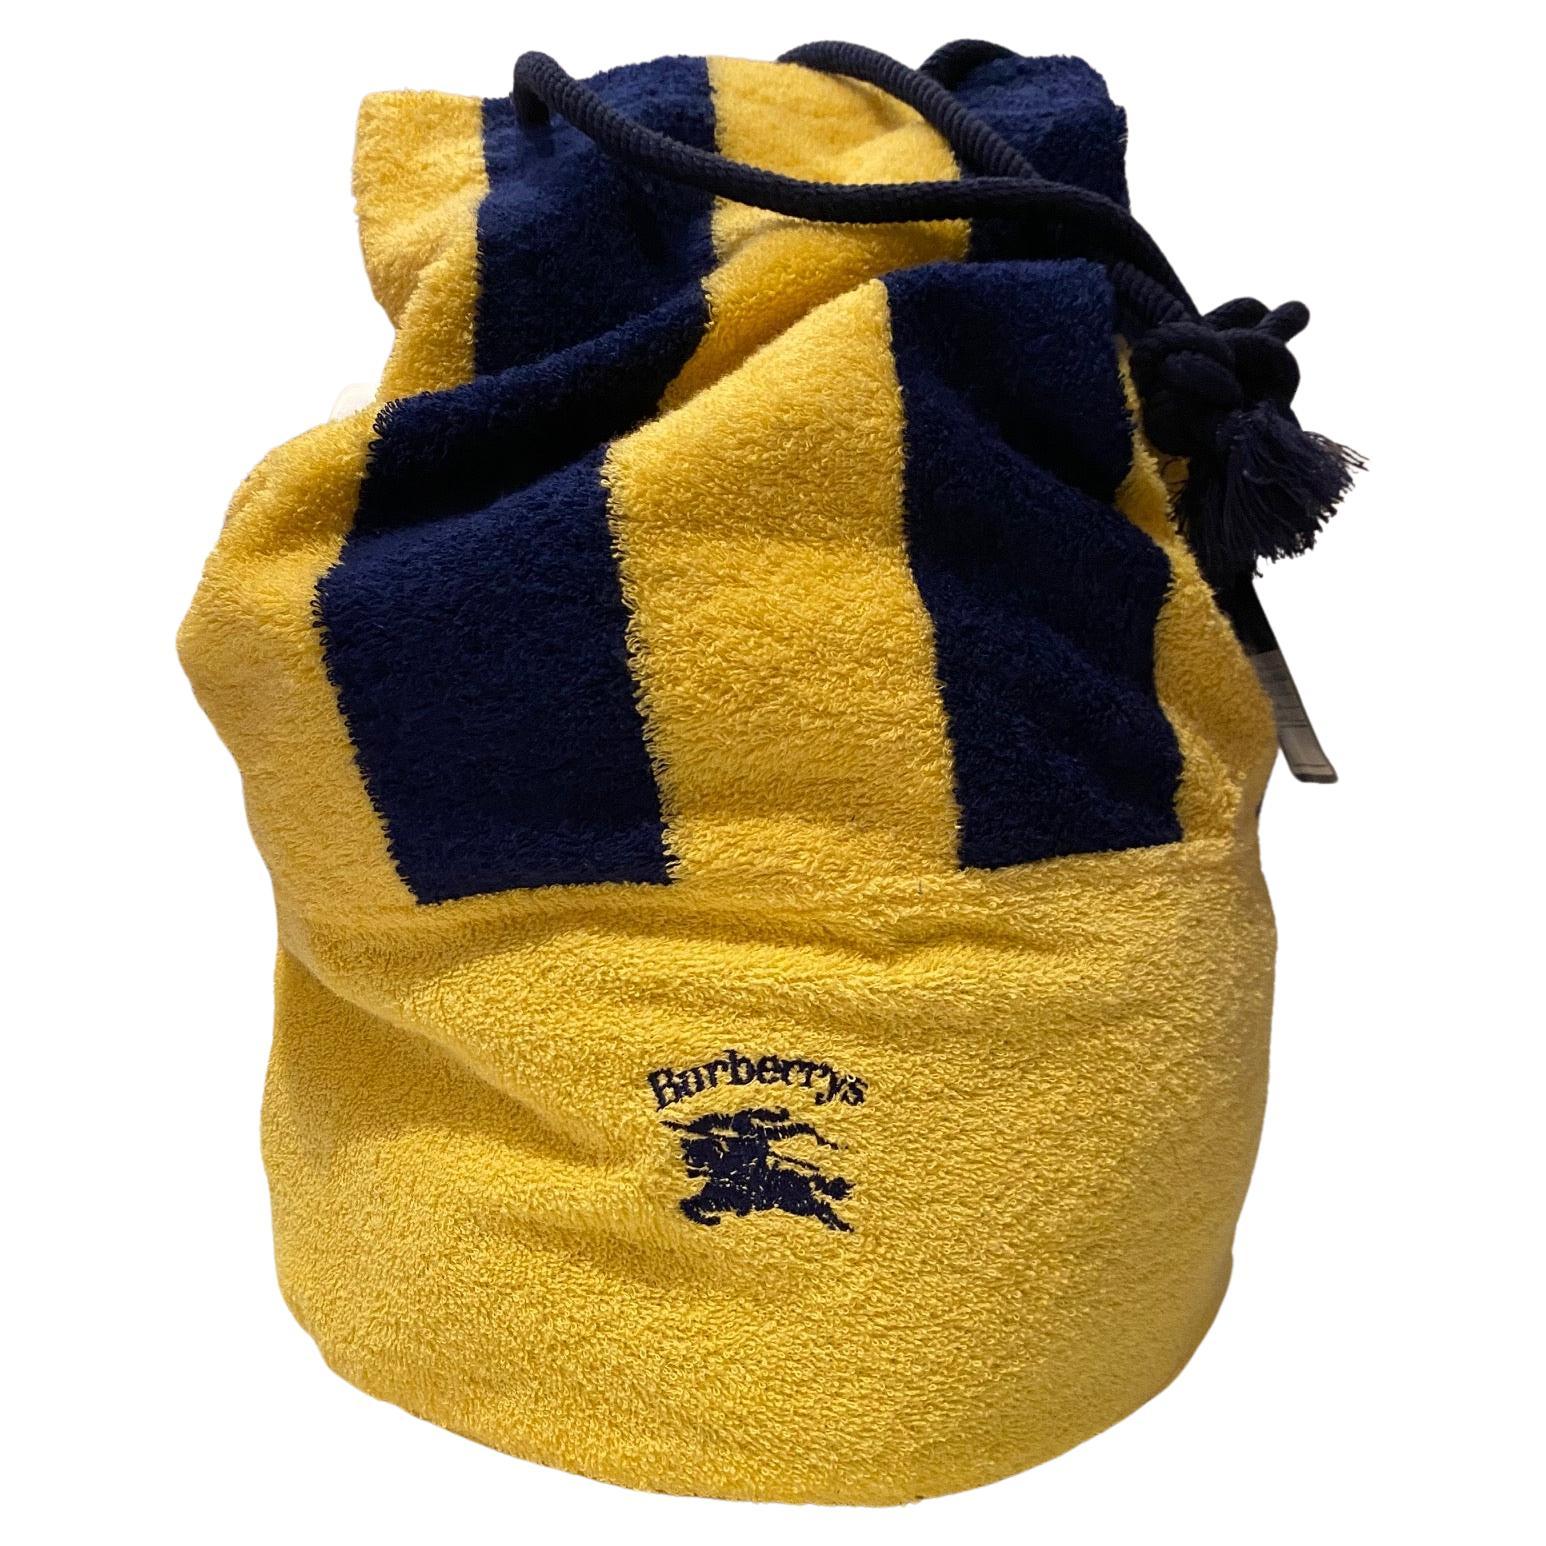 Die Burberry Toweling Beach Duffle Bag in Gelb ist mit einem Logo auf der Vorderseite und blauen Seilgriffen versehen und damit die perfekte Wahl für Ihren Strand-/Pooltag. Diese auffällige Tasche aus Frottee ist eine luxuriöse und robuste Option